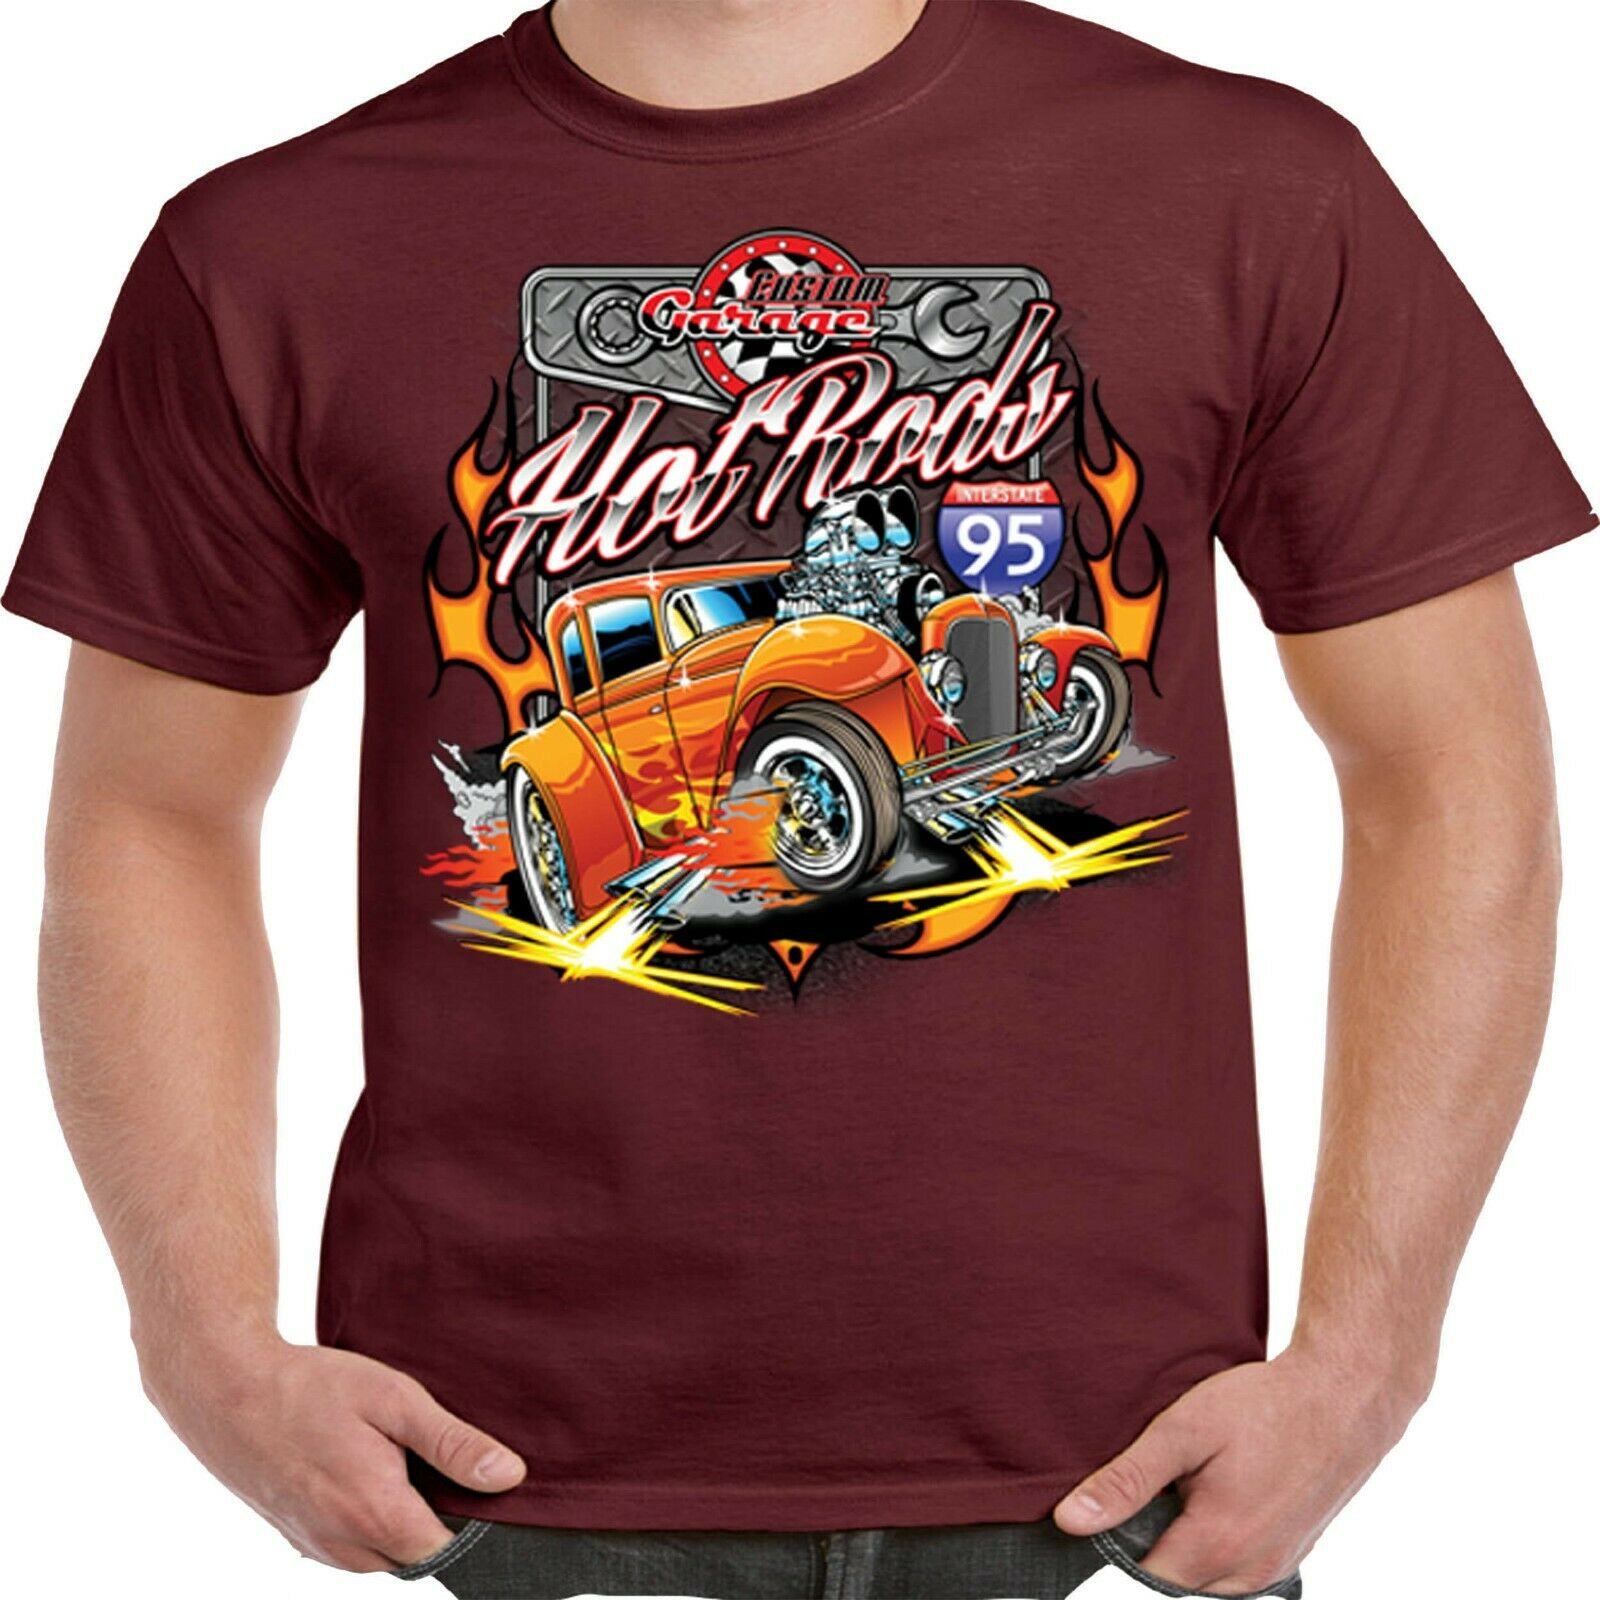 Hotrod 58 t shirt Hot Rat Rod Remplissez Er Up Drag Strip Racing DRAGSTER RACE CAR 162